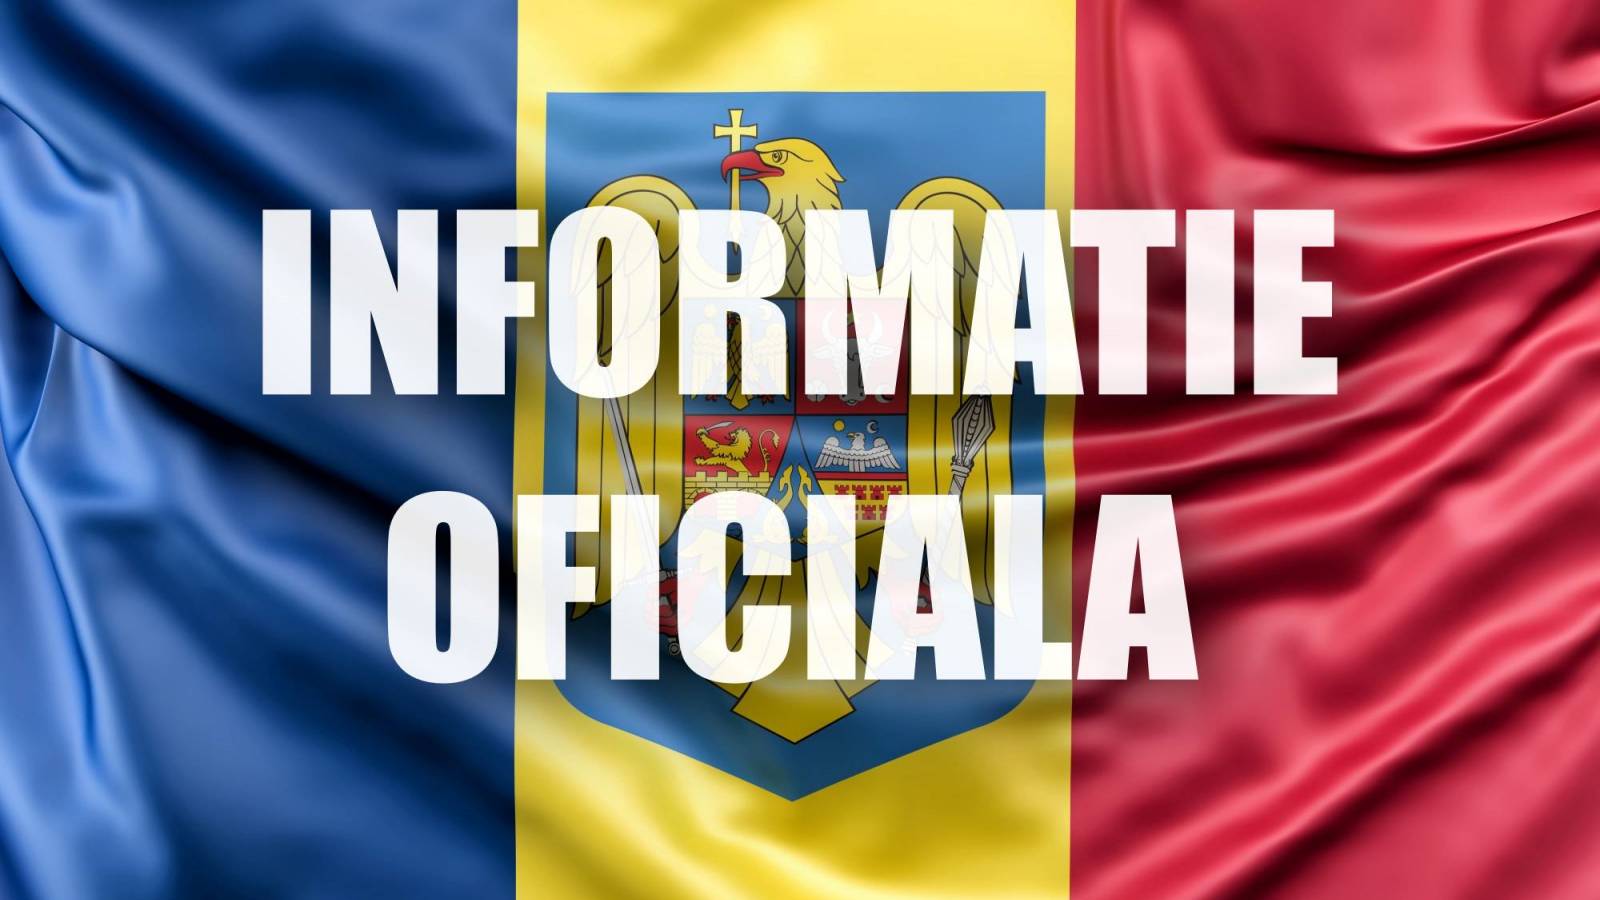 Ministerie van Defensie Nieuwe officiële informatie LAATSTE MOMENT Maatregelen Volledige oorlog Oekraïne